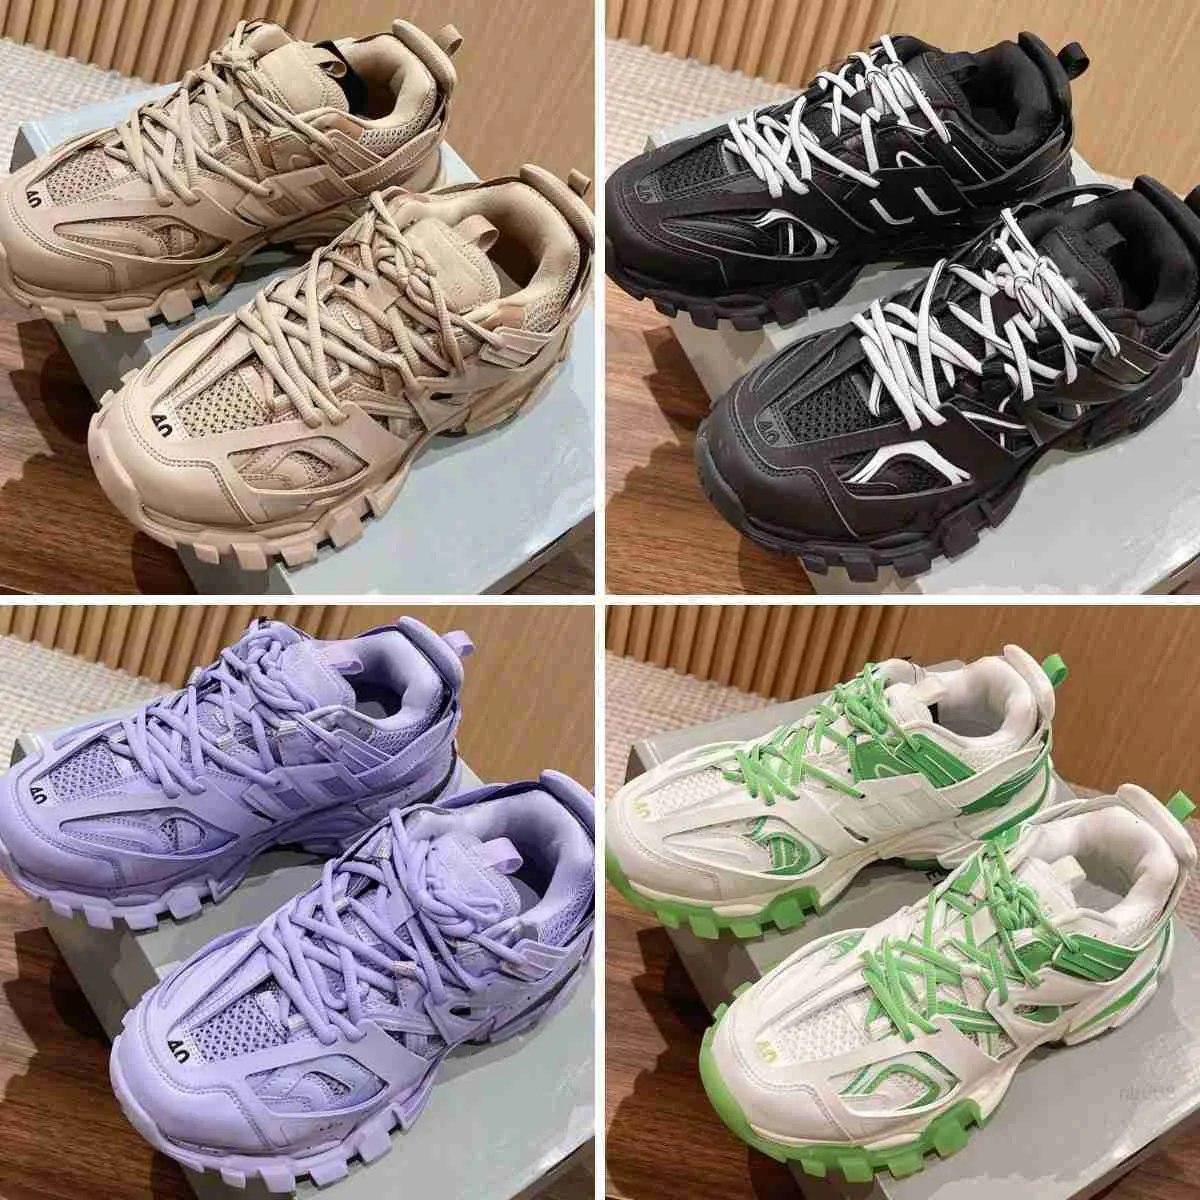 5A sneaker designer sneakers män kvinnor spår 3 3.0 trippelvita svarta tränare lyxiga nylon tryckt sko storlek 35-45